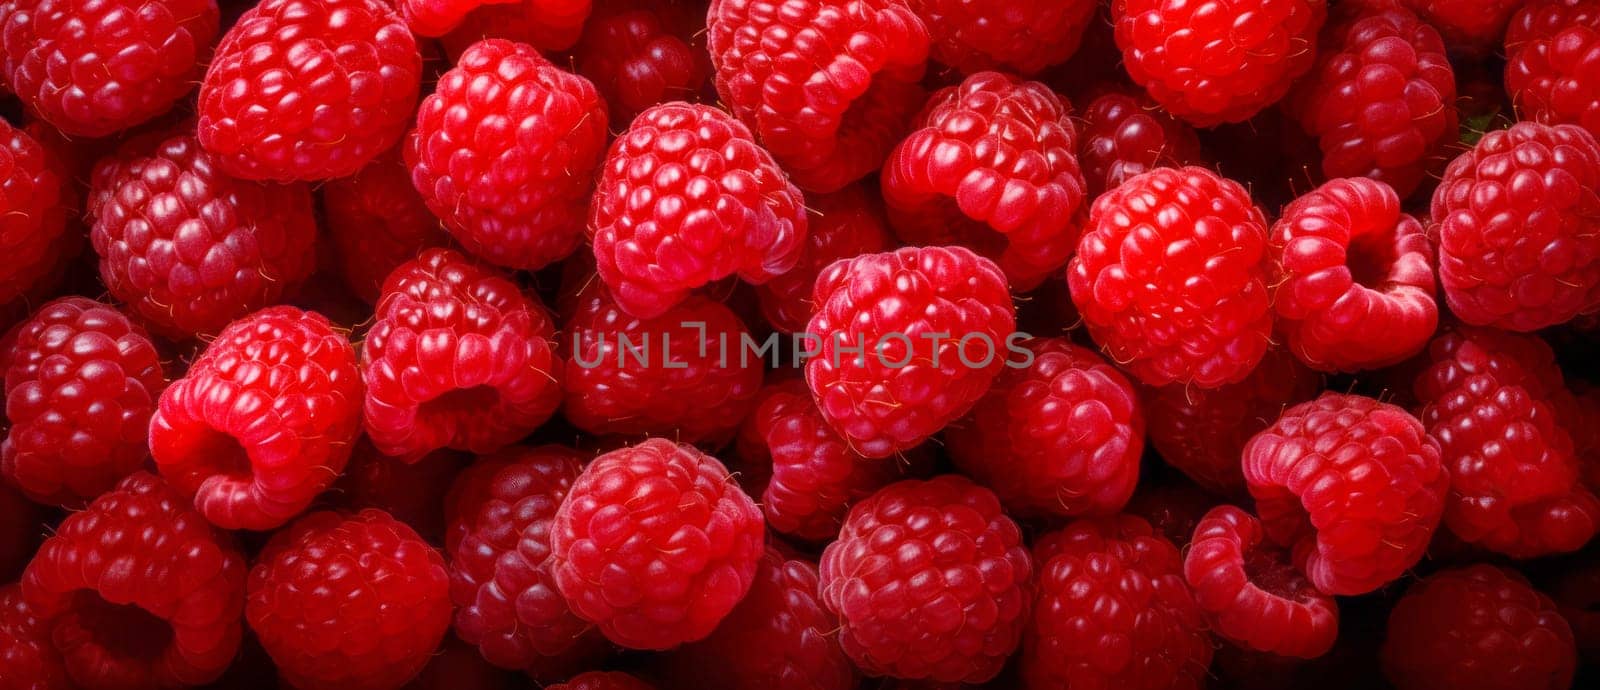 fruit banner from the harvest of ripe organic raspberries by NataliPopova